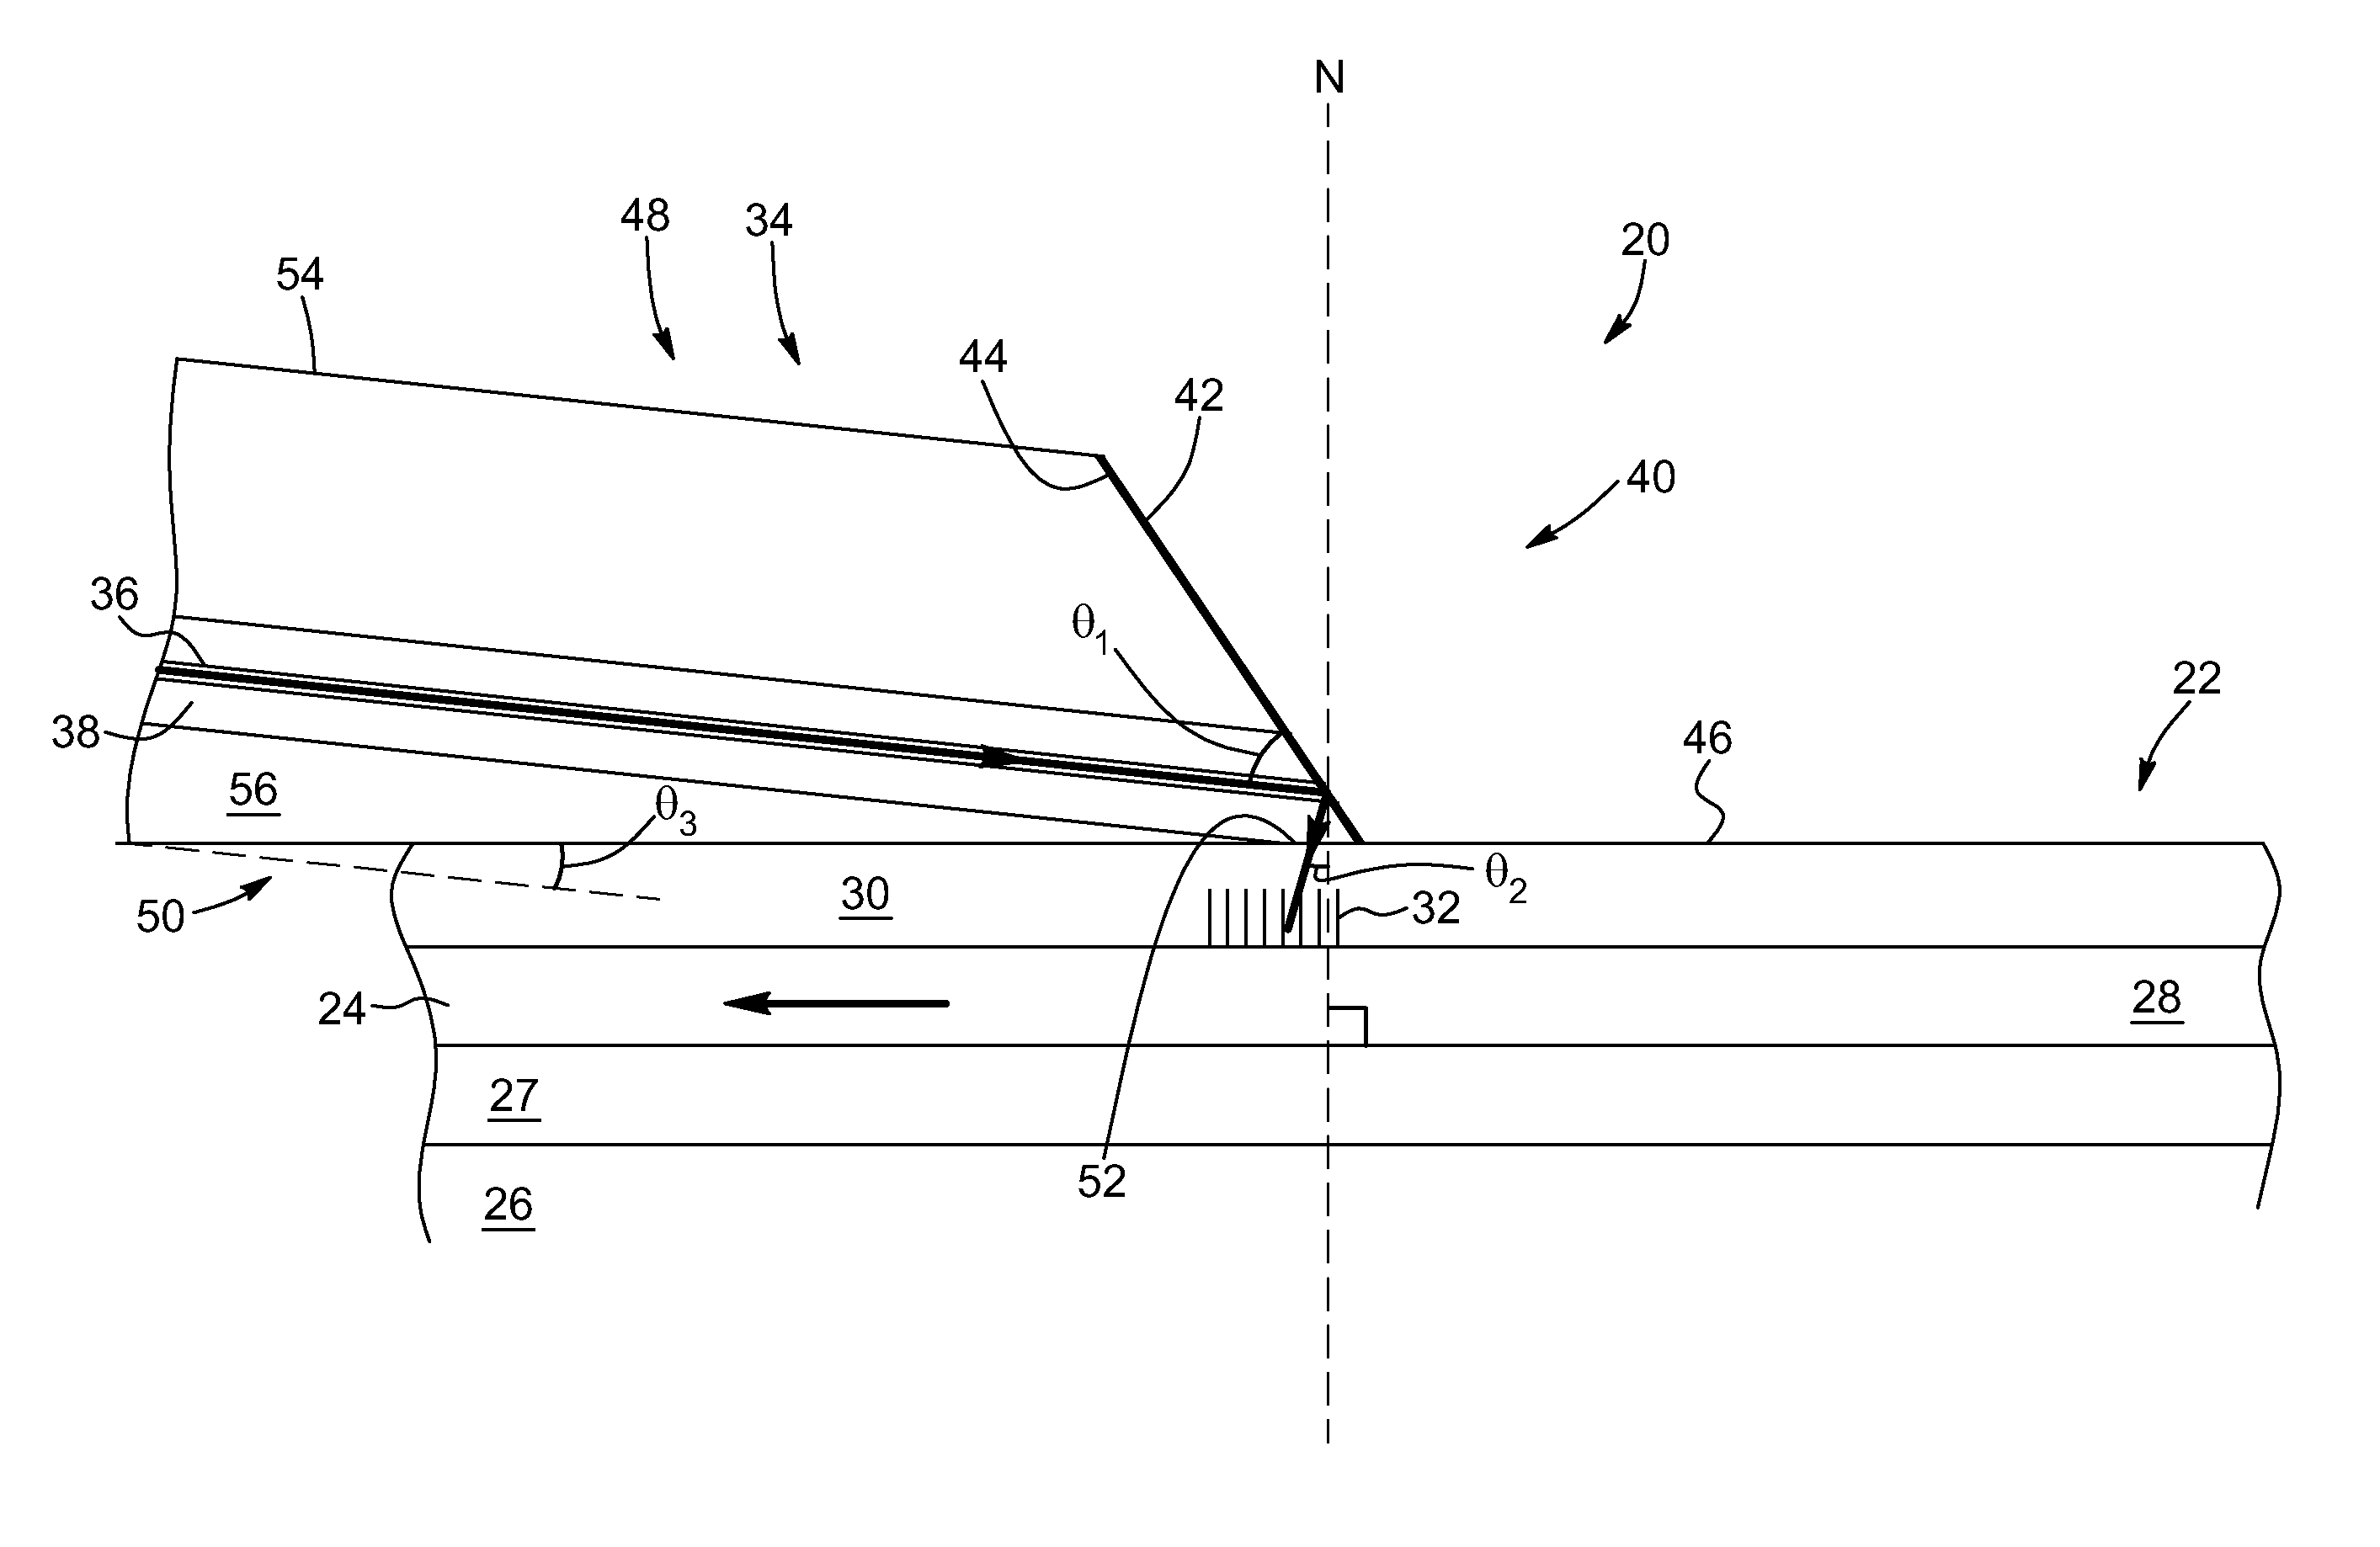 Fiber coupling technique on a waveguide